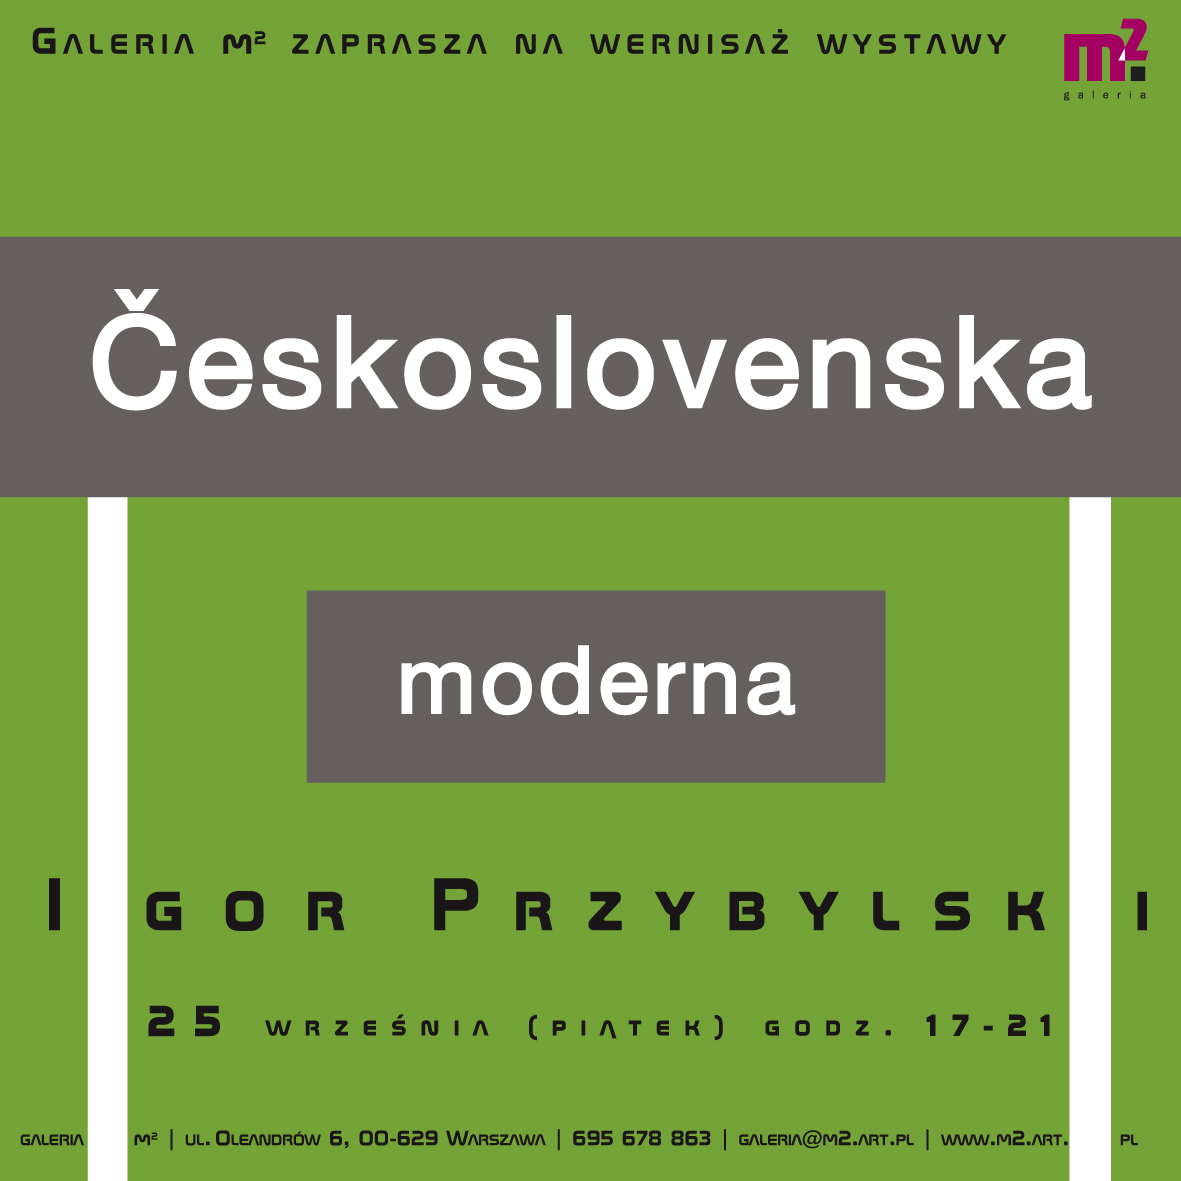 Wystawa Igora Przybylskiego „Československa moderna” (źródło: materiały prasowe organizatora)